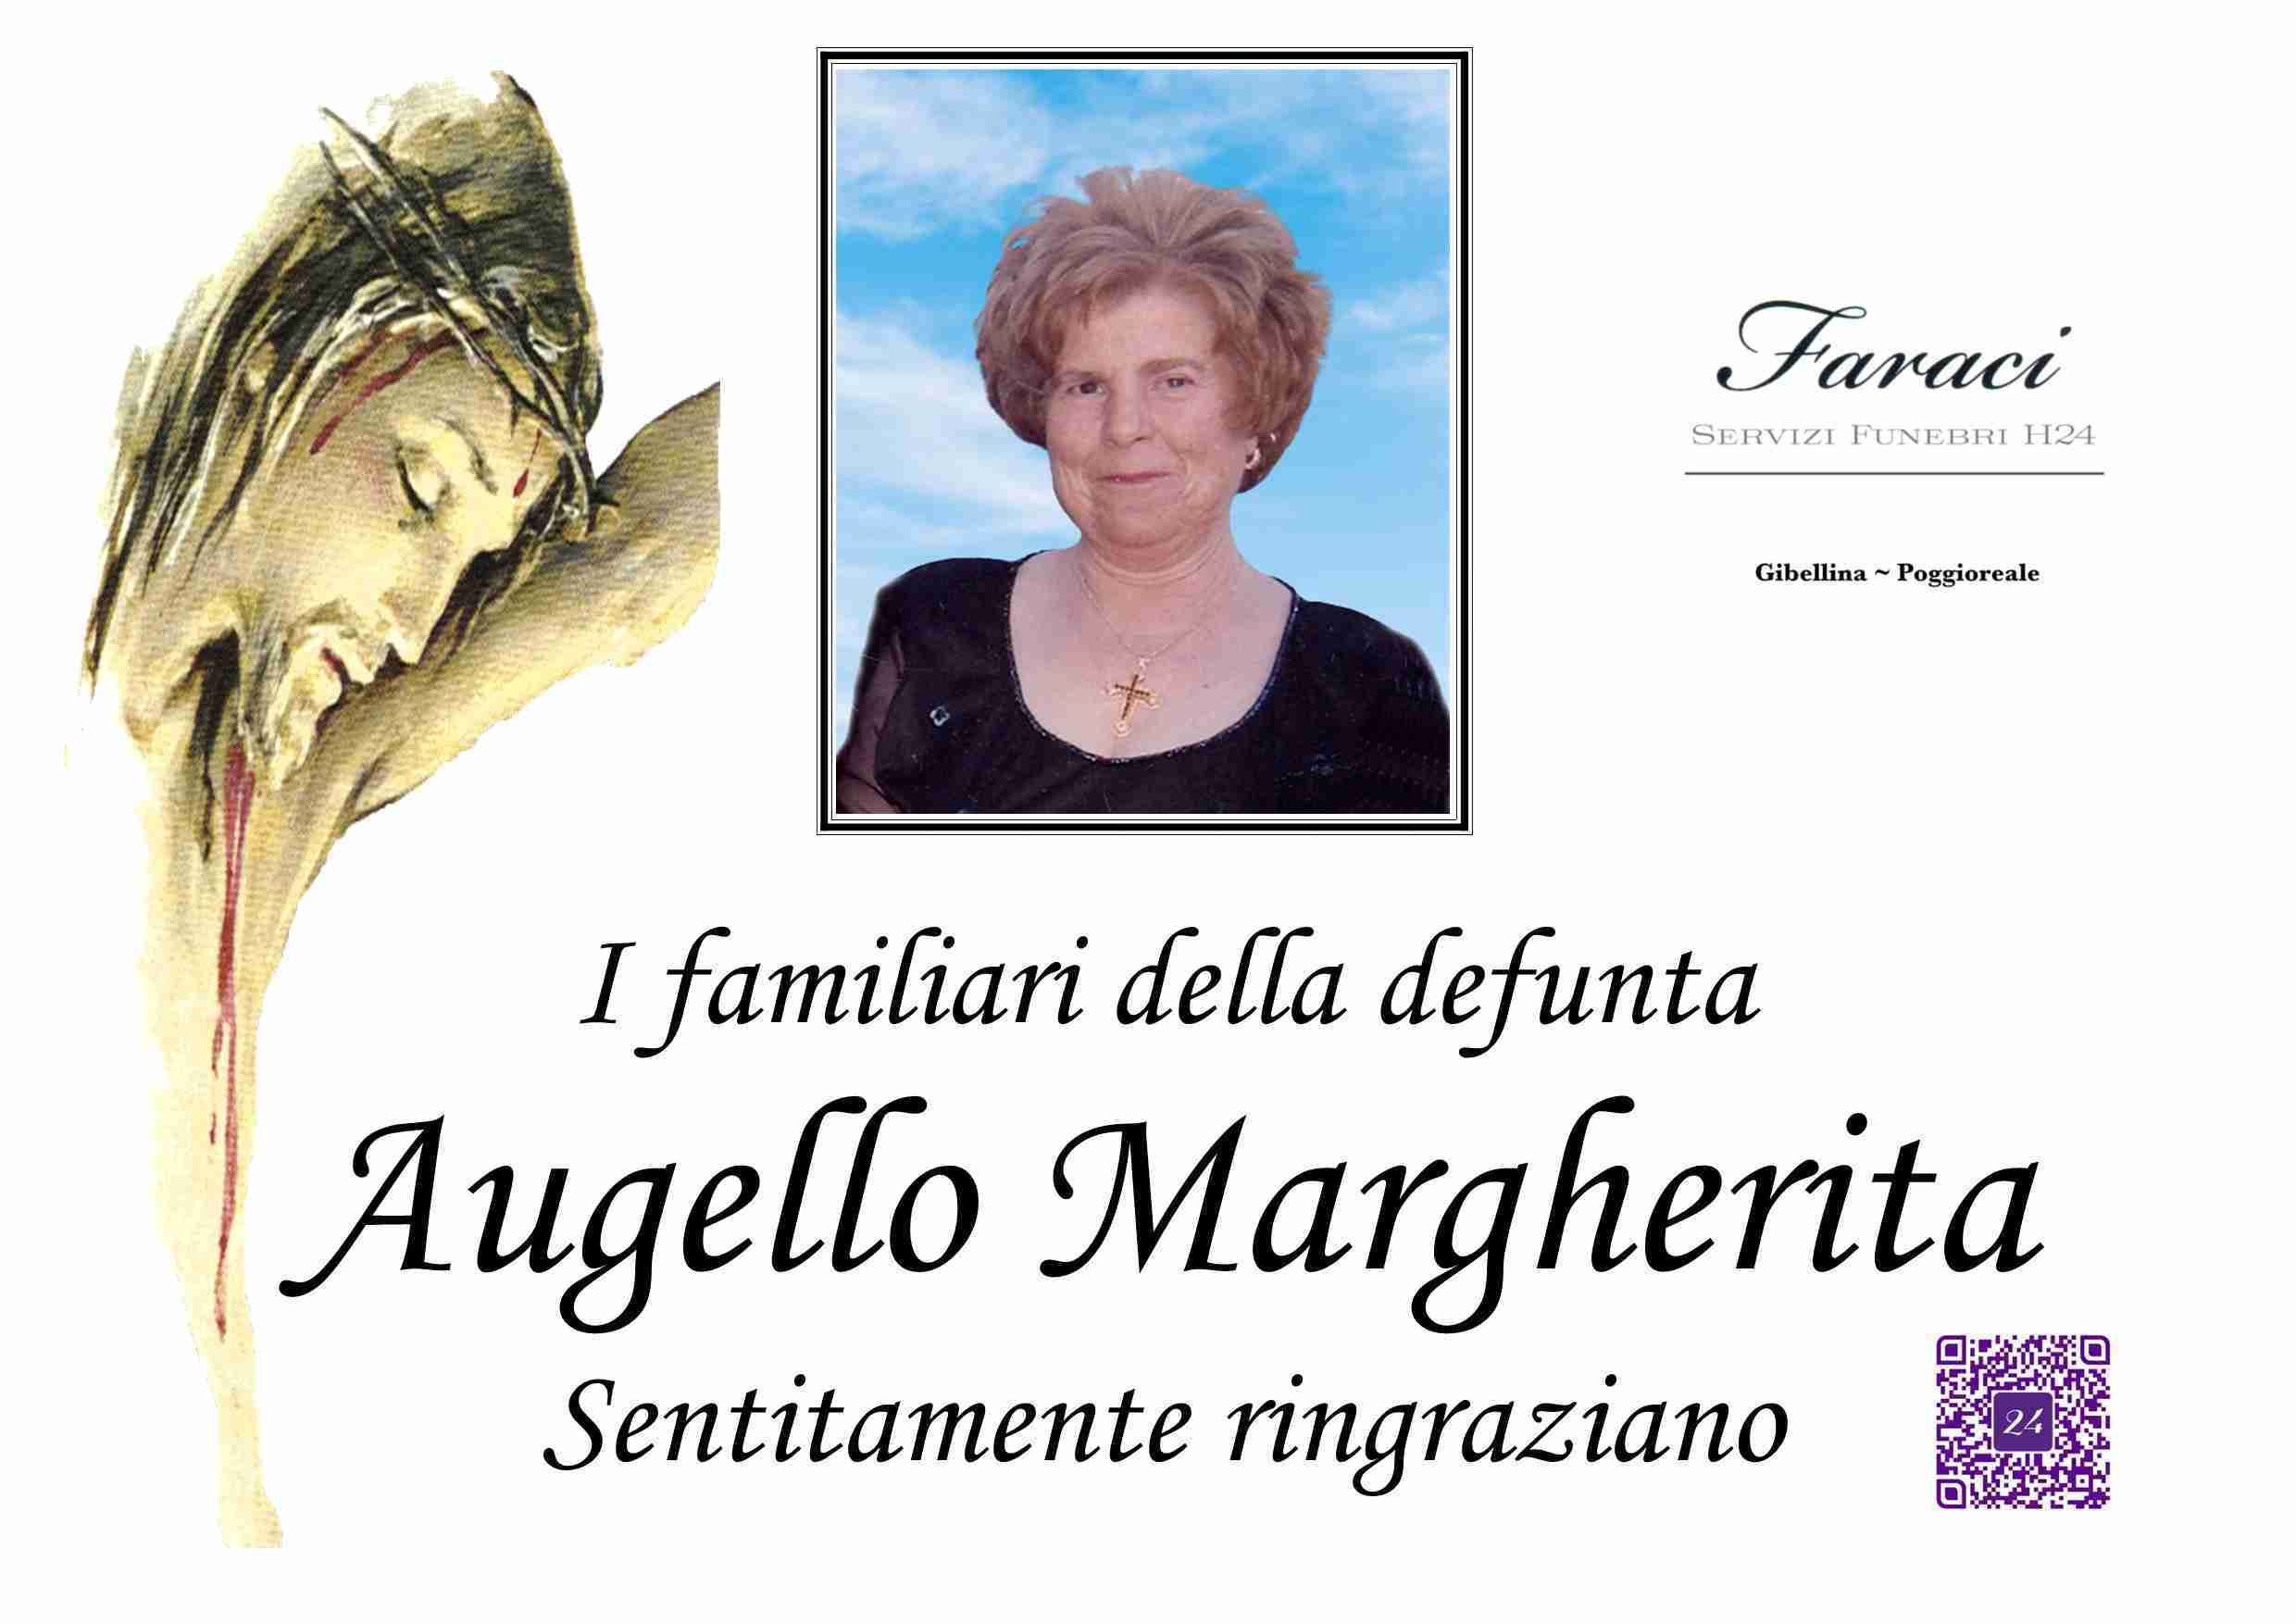 Margherita Augello